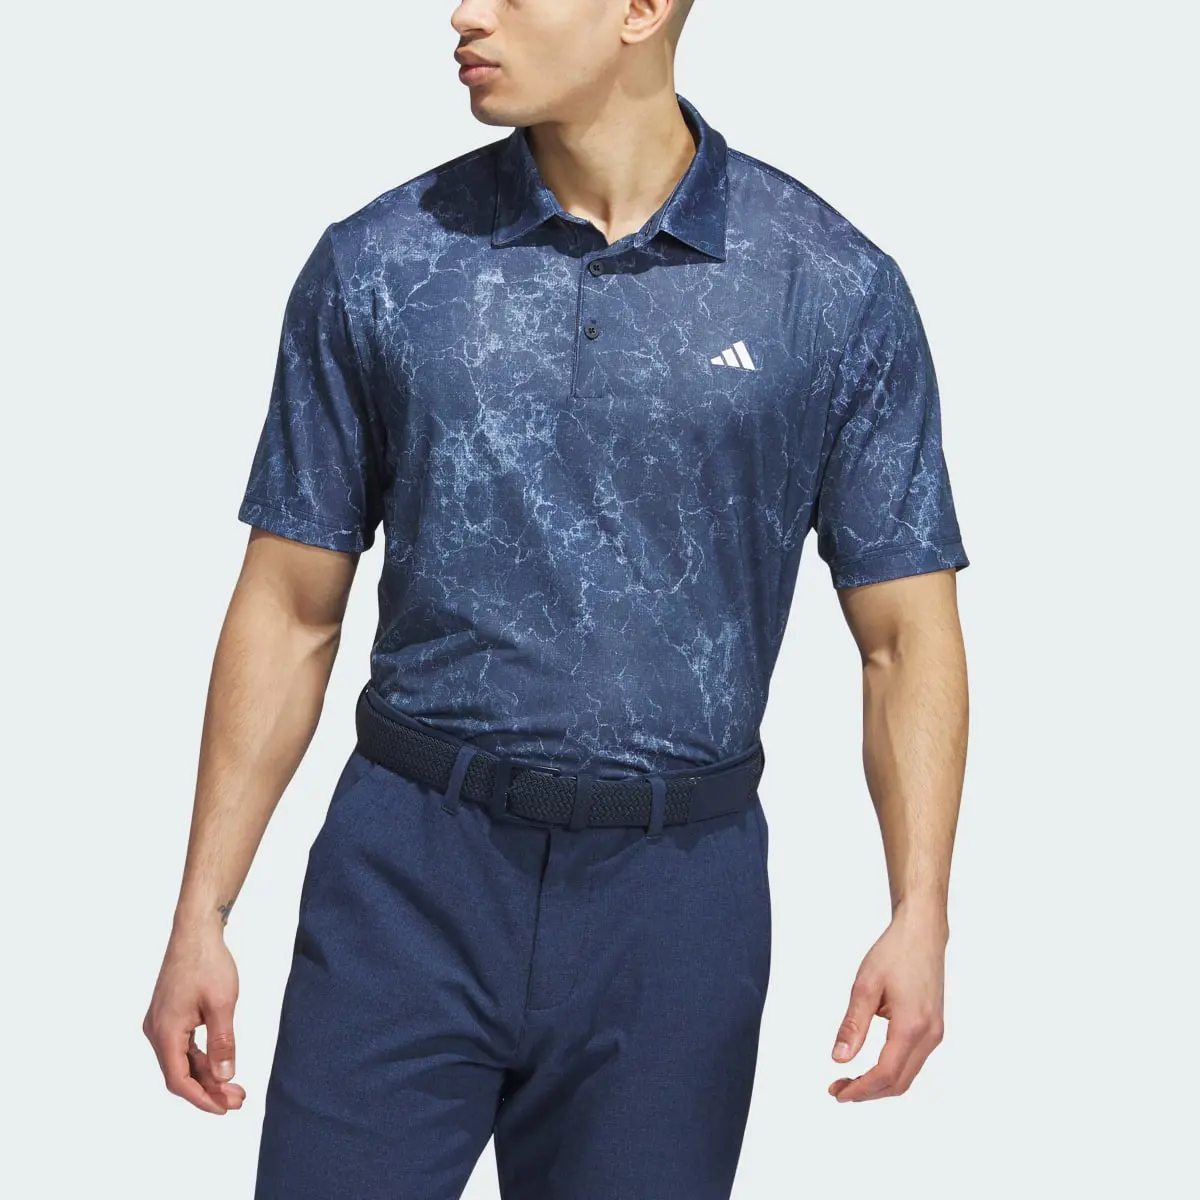 Adidas Ultimate365 Print Polo Shirt. 1